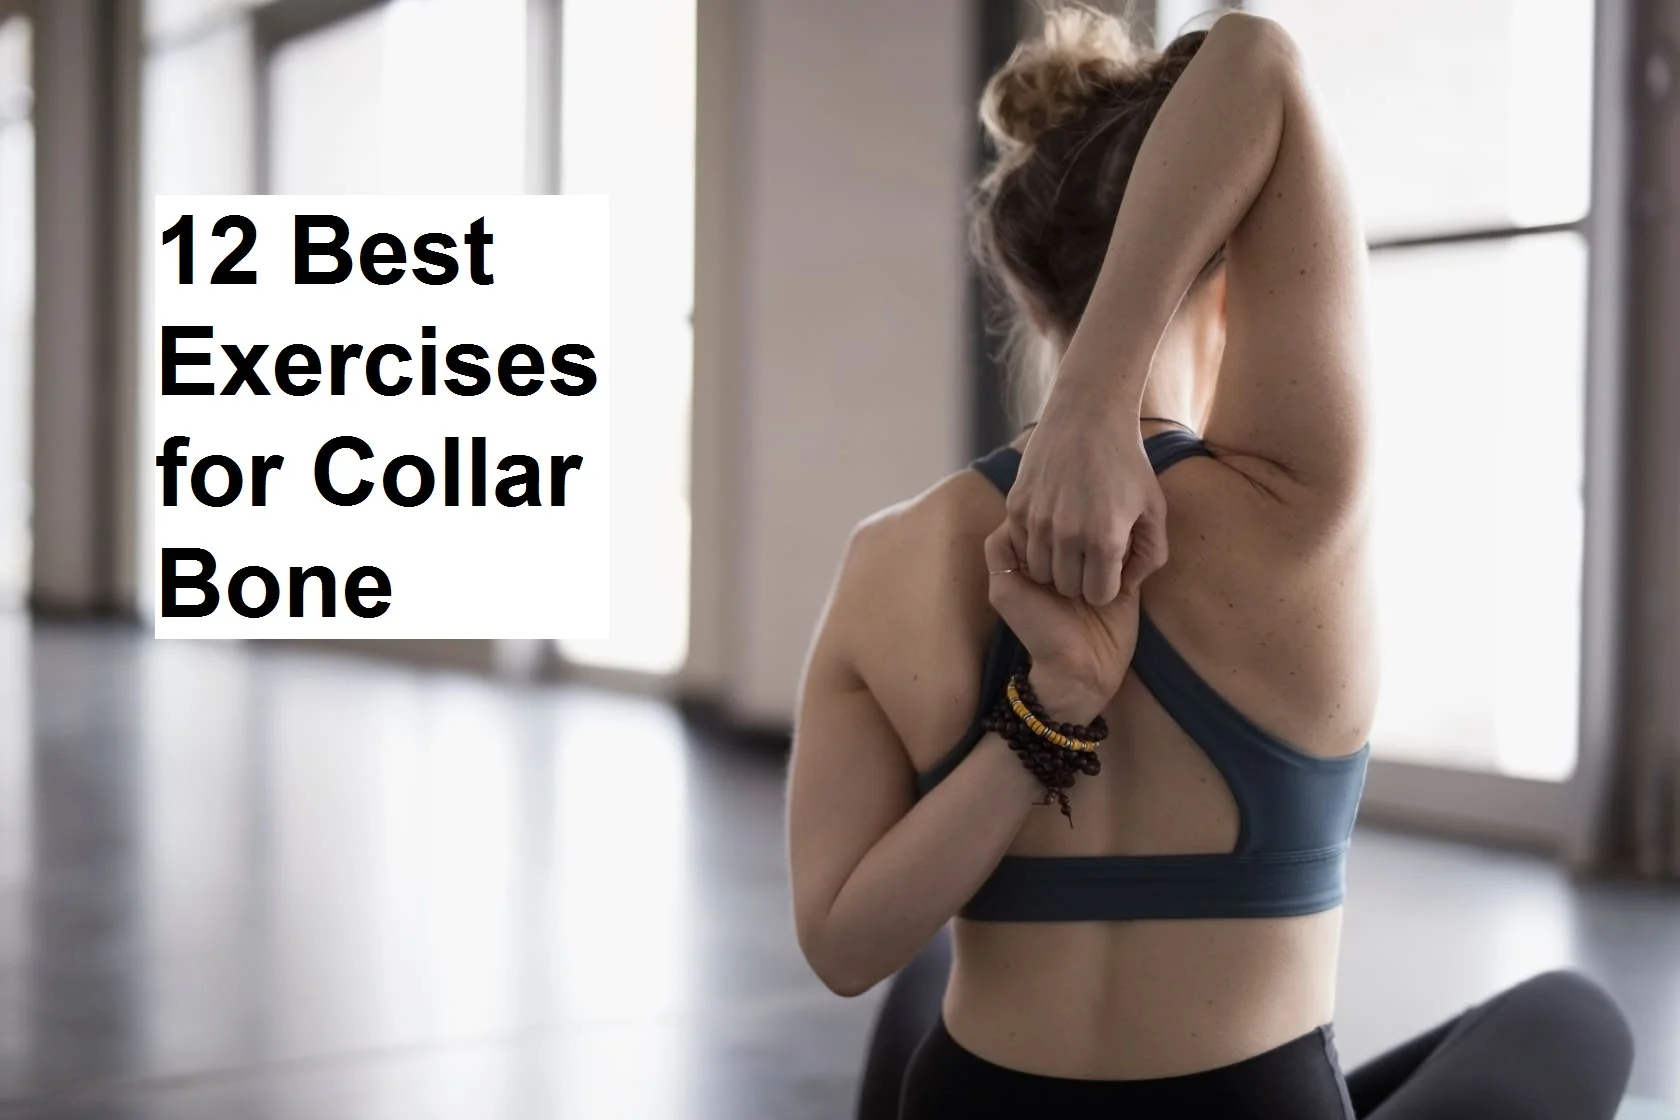 The 12 Best Exercises for Women / Fitness